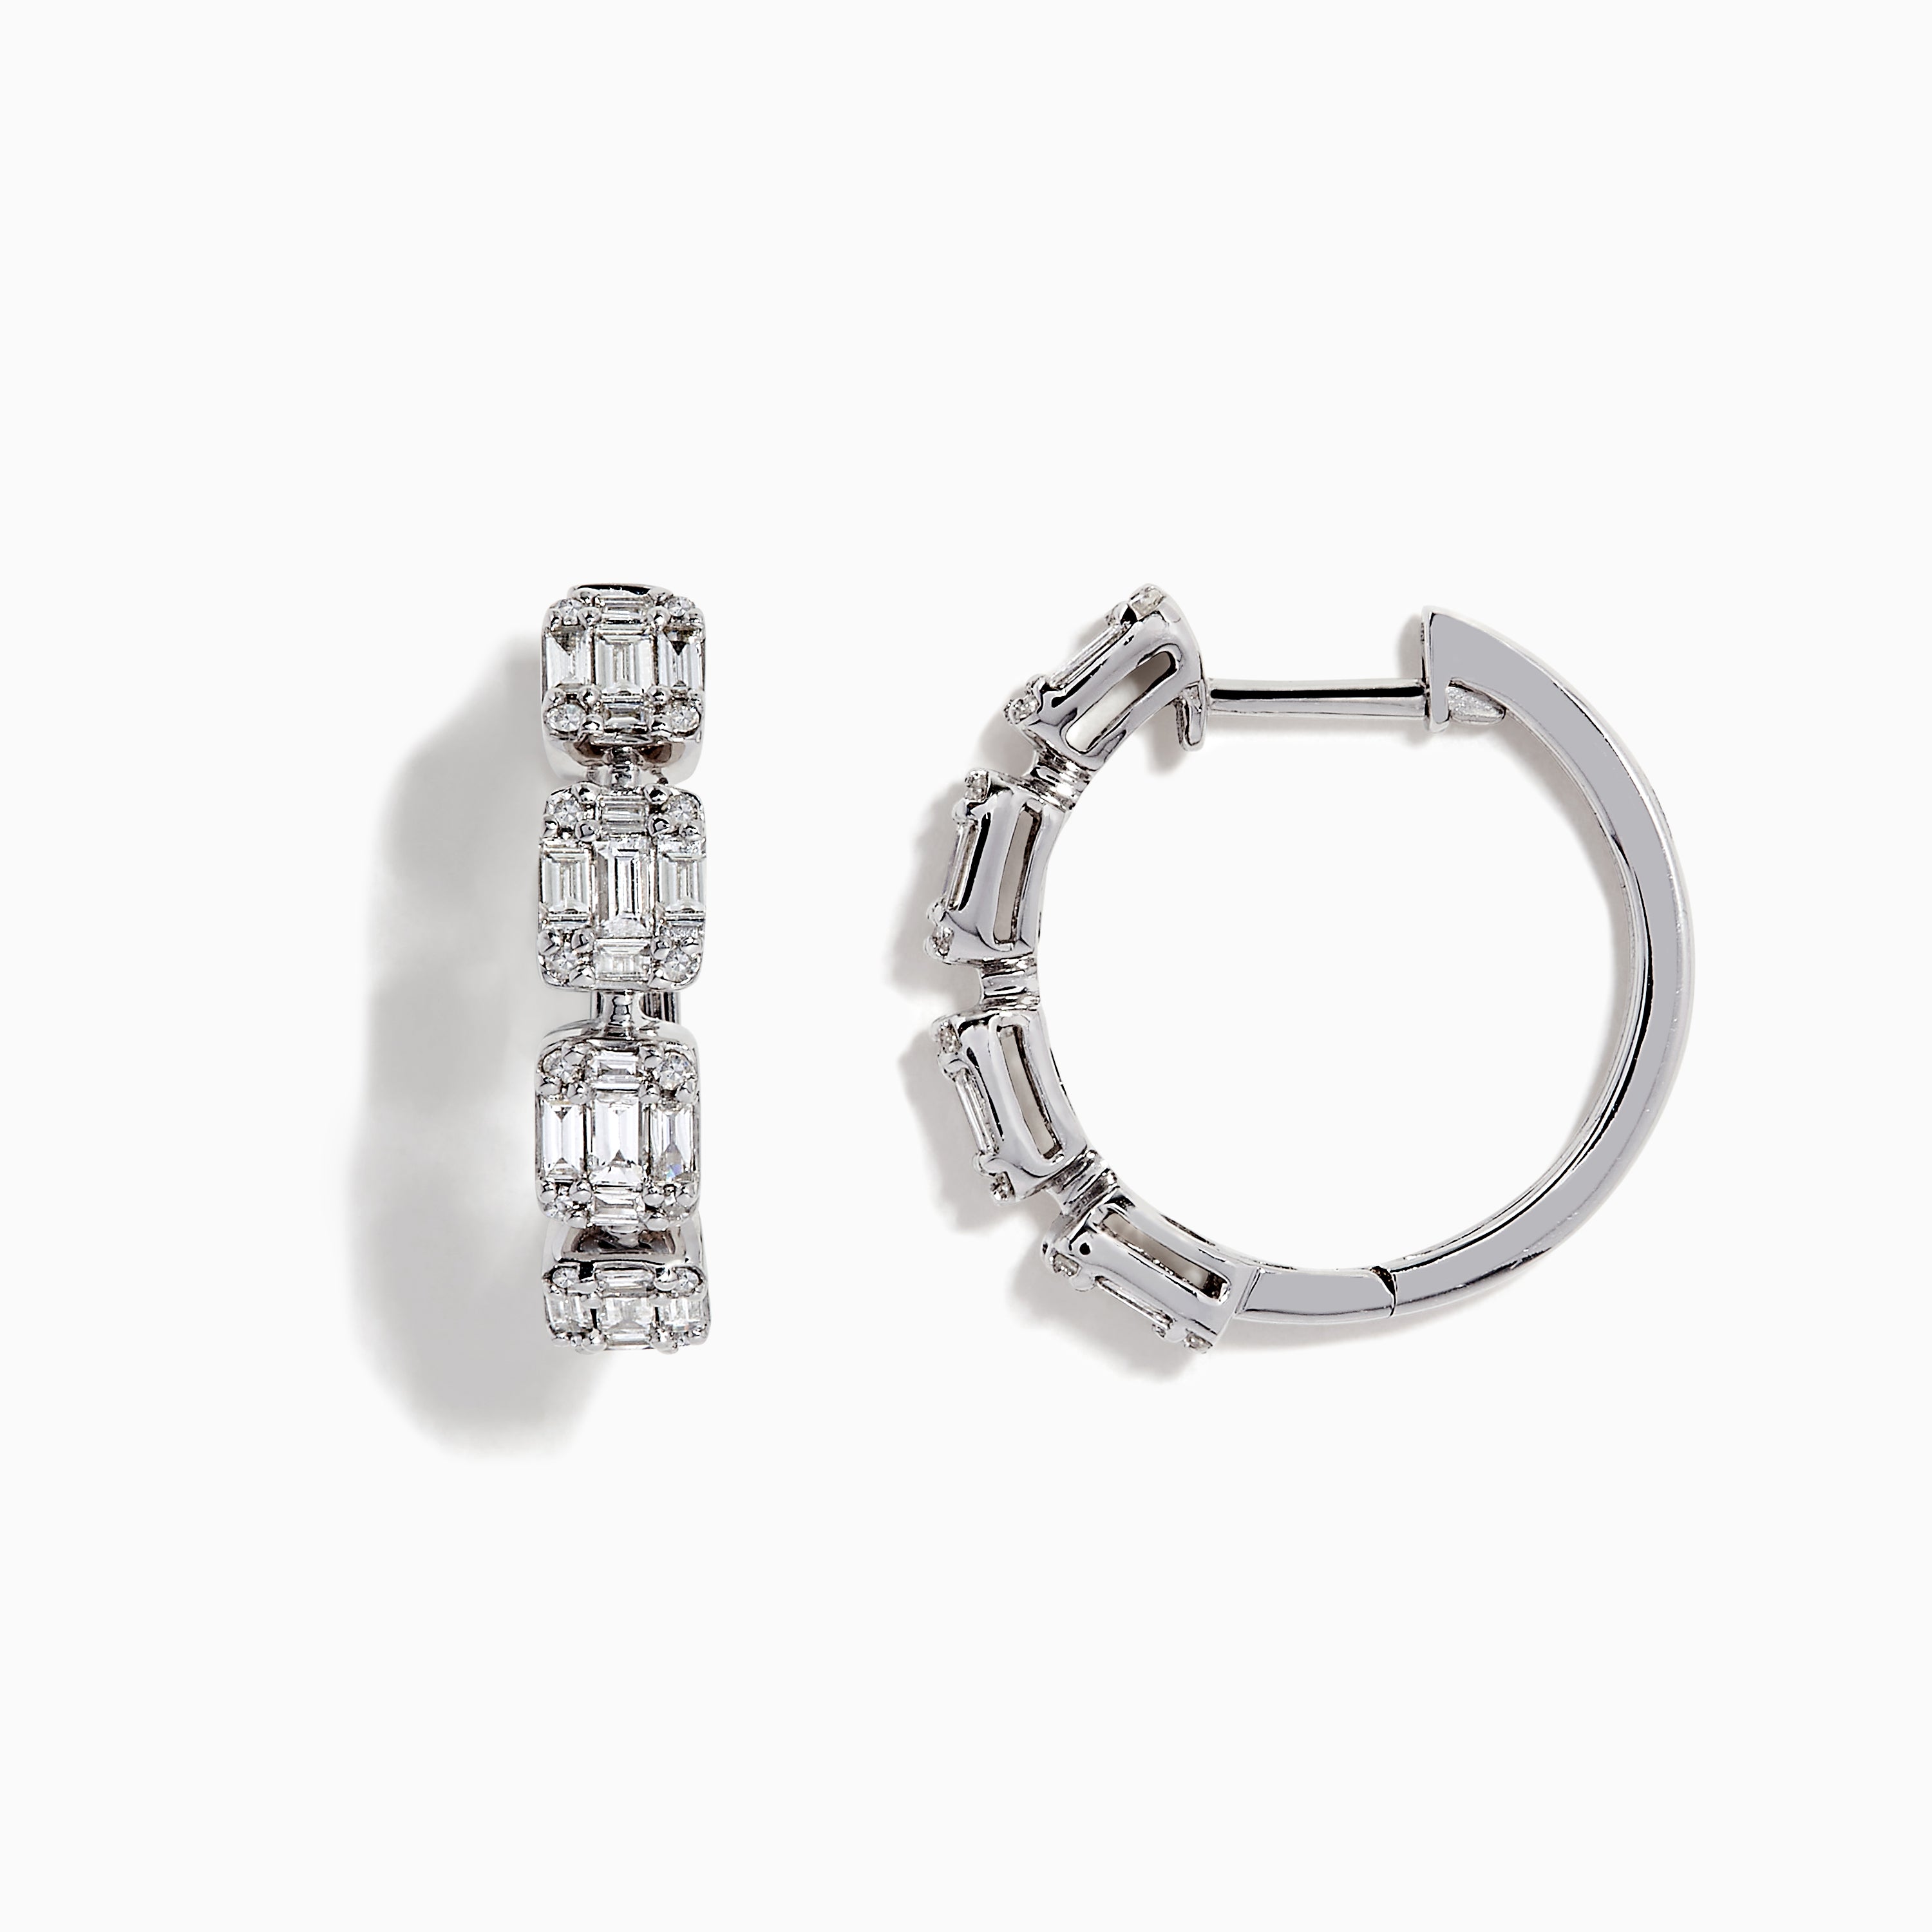 Effy Classique 14K White Gold Diamond Hoop Earrings, 0.77 TCW